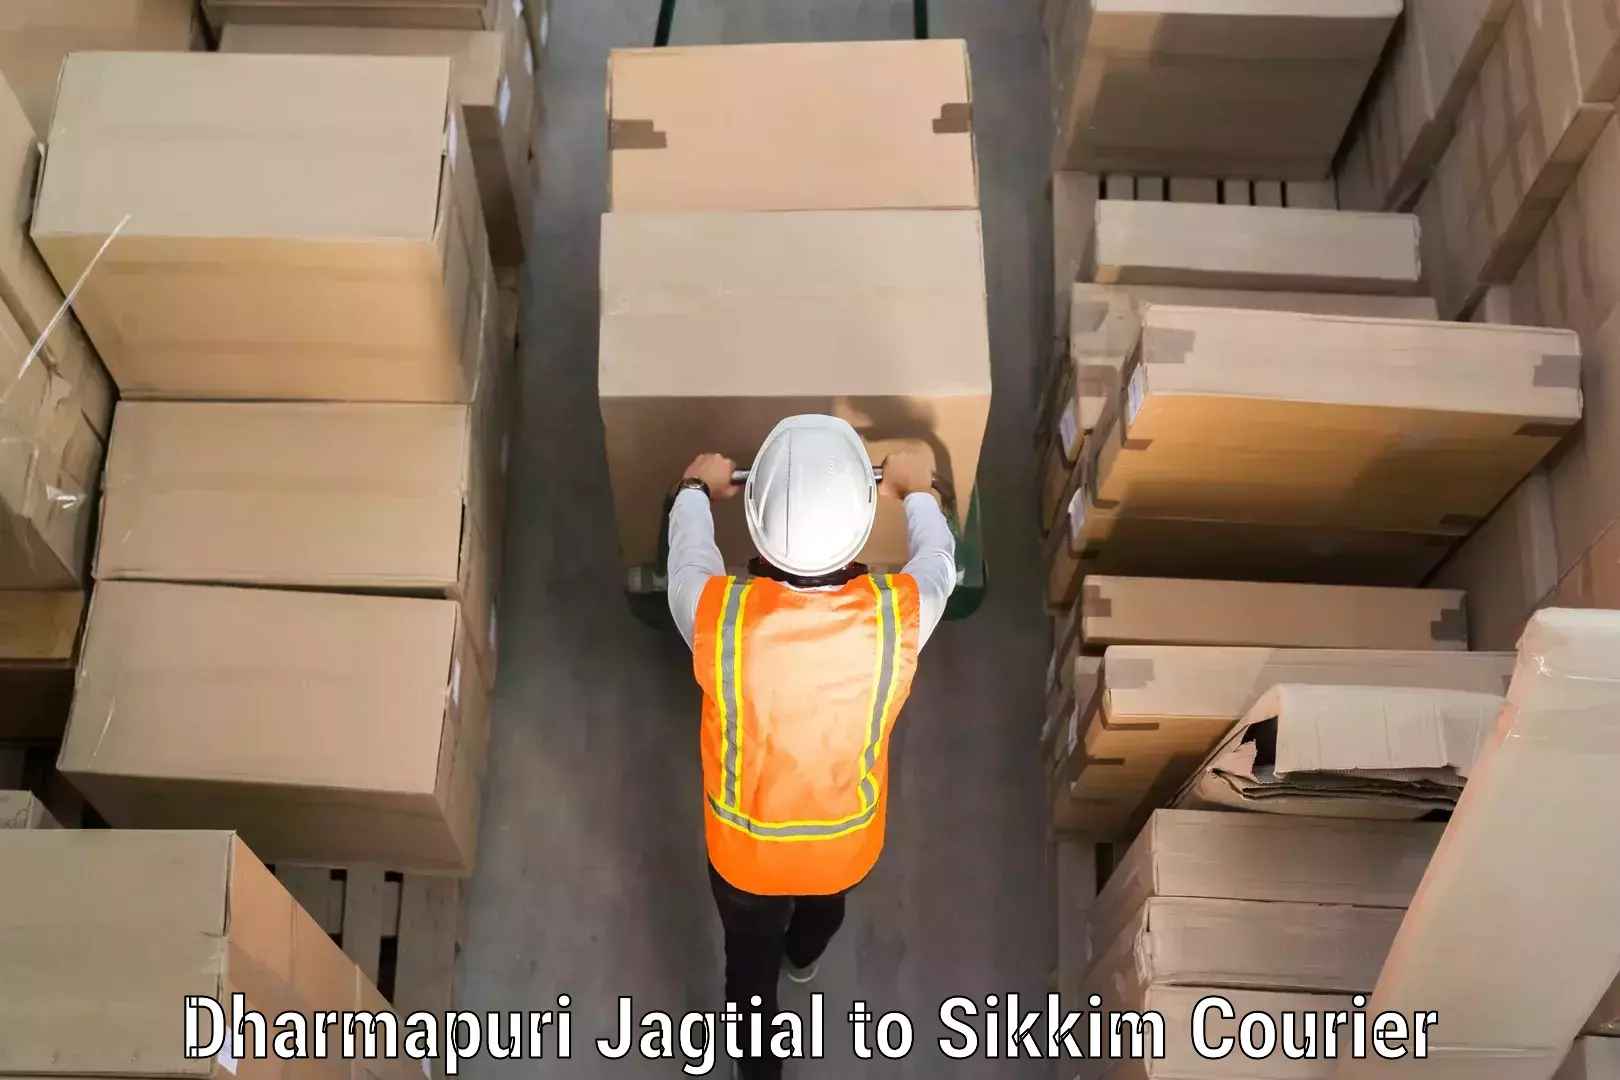 Luggage delivery app Dharmapuri Jagtial to Mangan